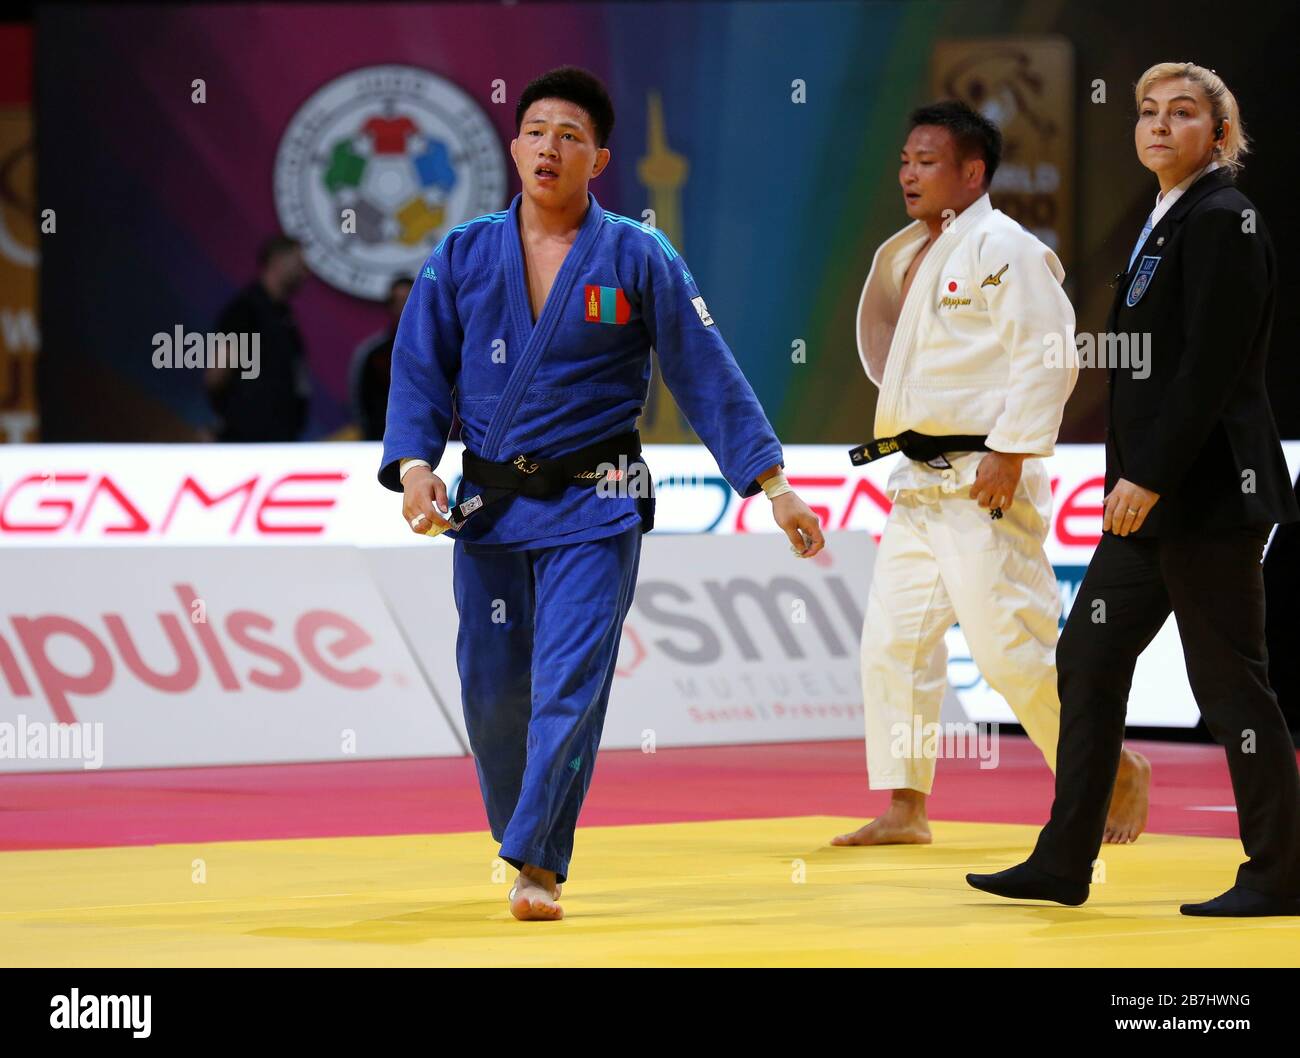 Paris, France - 08 février 2020: Masashi Ebinuma pour le Japon contre Tsogtbaatar Tsend-Ochir pour la Mongolie, hommes -73 kg, médaille de bronze Match(crédit: Mickael Chavet) Banque D'Images